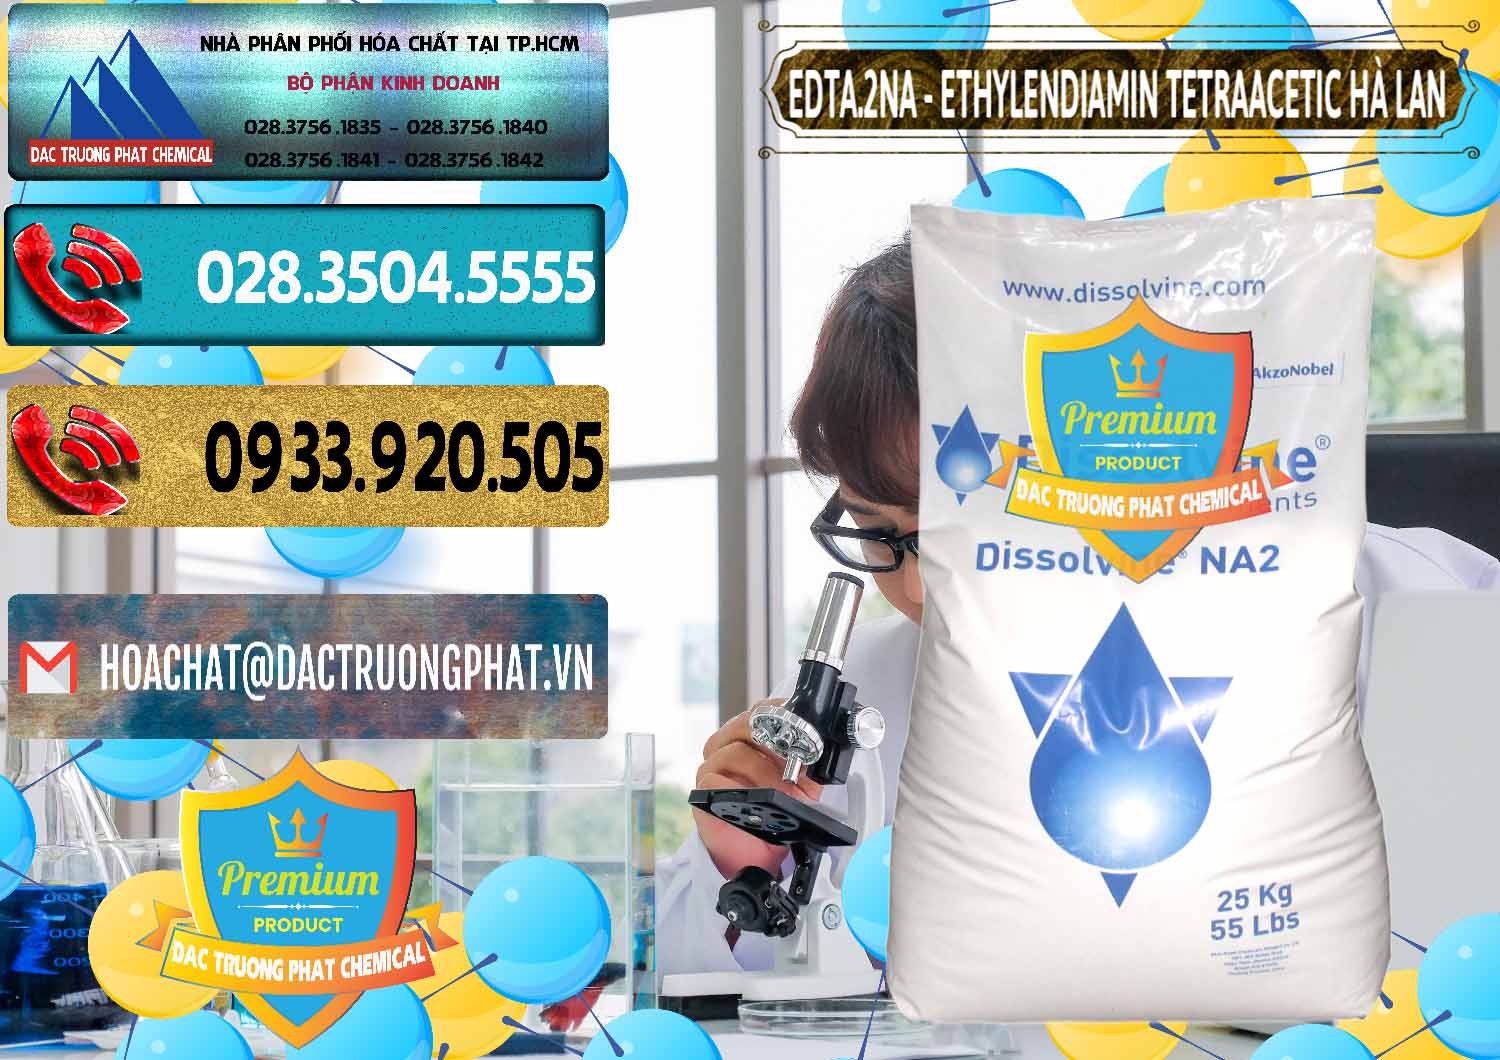 Đơn vị chuyên nhập khẩu và bán EDTA.2NA - Ethylendiamin Tetraacetic Dissolvine Hà Lan Netherlands - 0064 - Nơi chuyên kinh doanh _ cung cấp hóa chất tại TP.HCM - hoachatdetnhuom.com